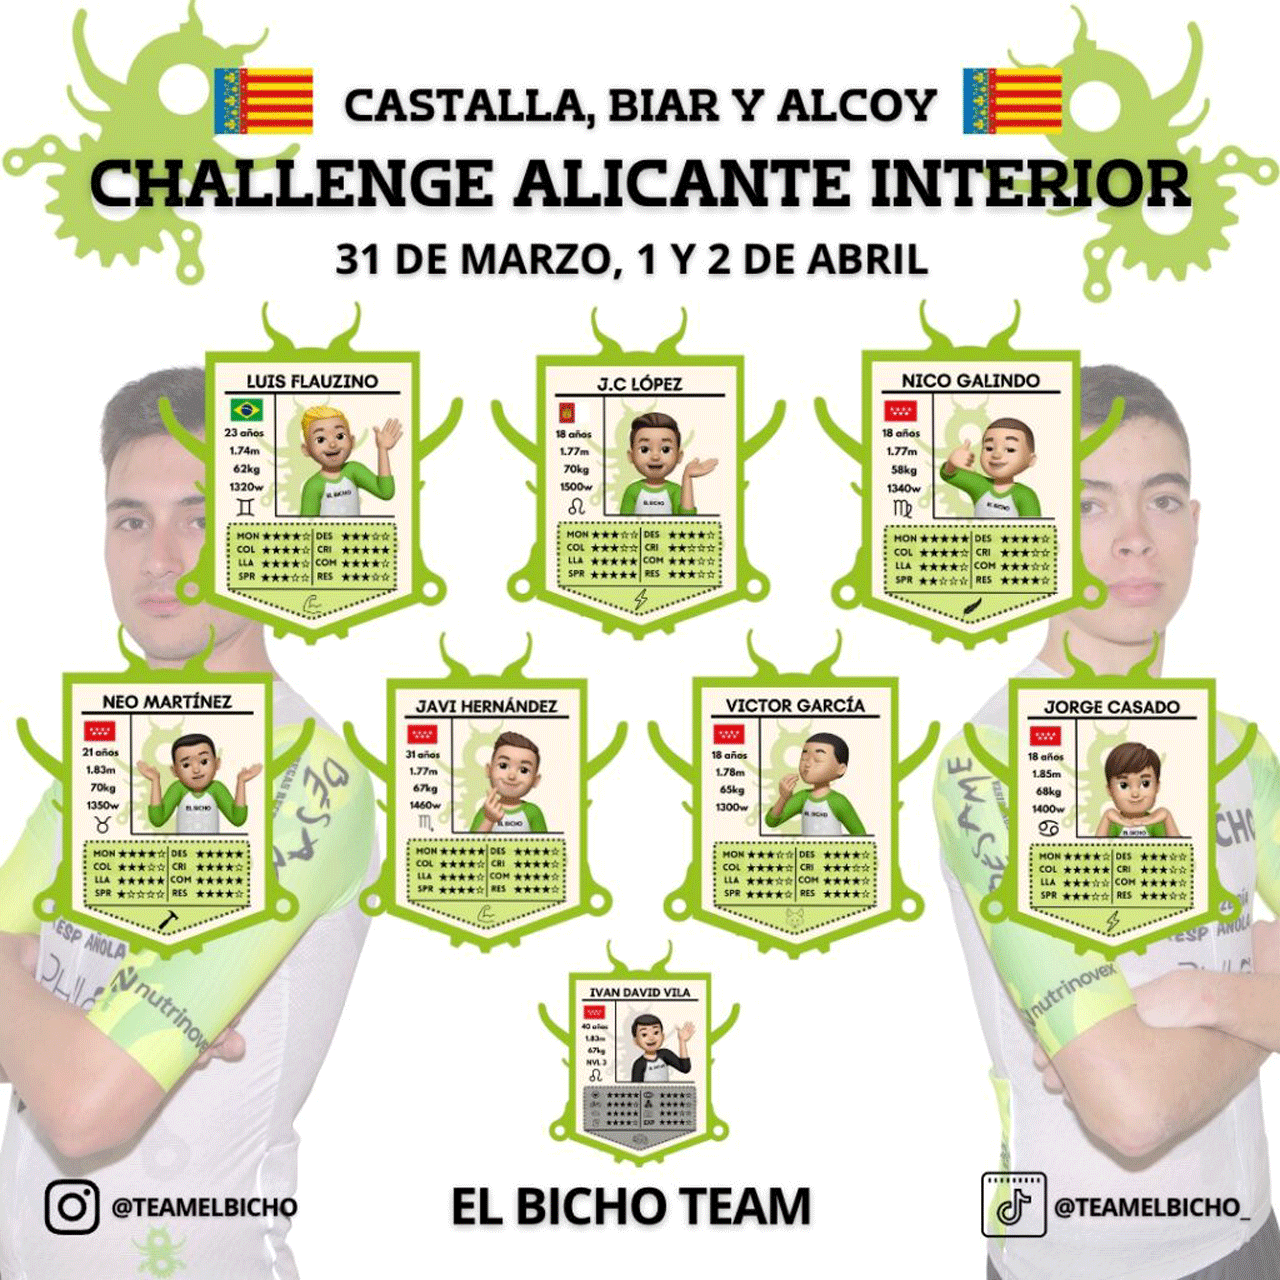 Componentes de 'El Bicho Team que participarán este fin de semana en Alicante